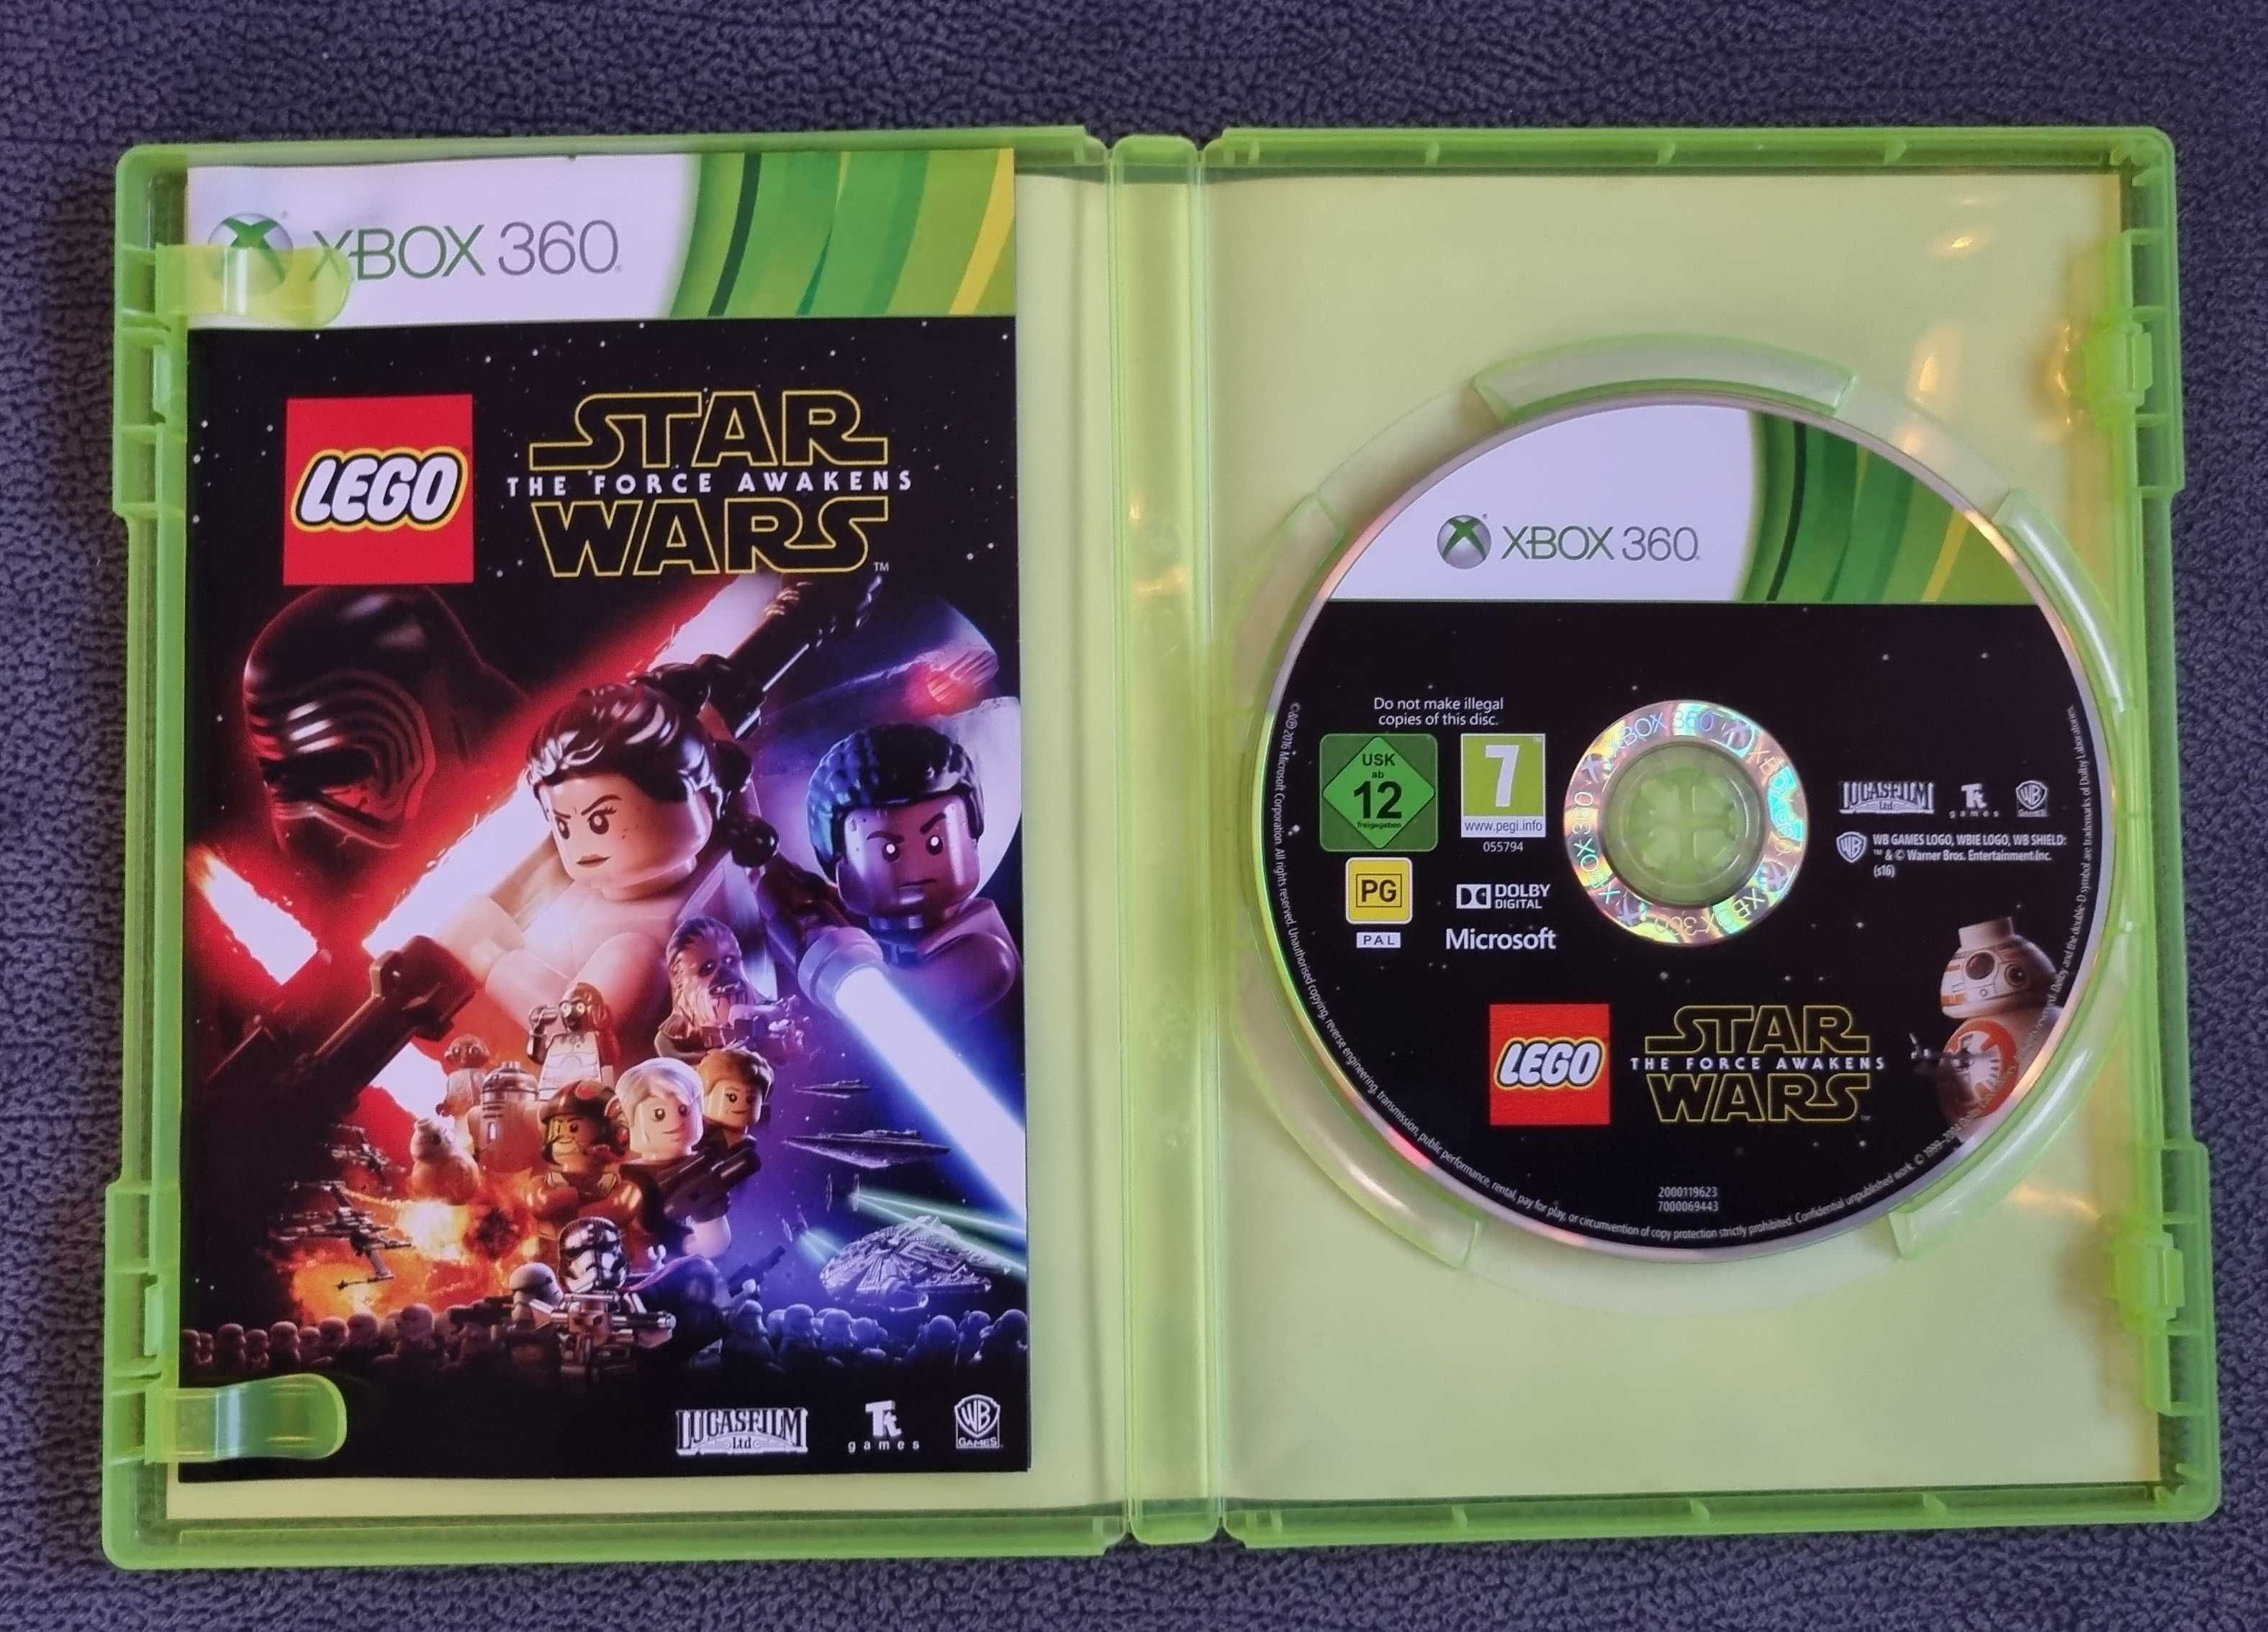 LEGO STAR WARS the force awakens - Xbox 360, Xbox ONE